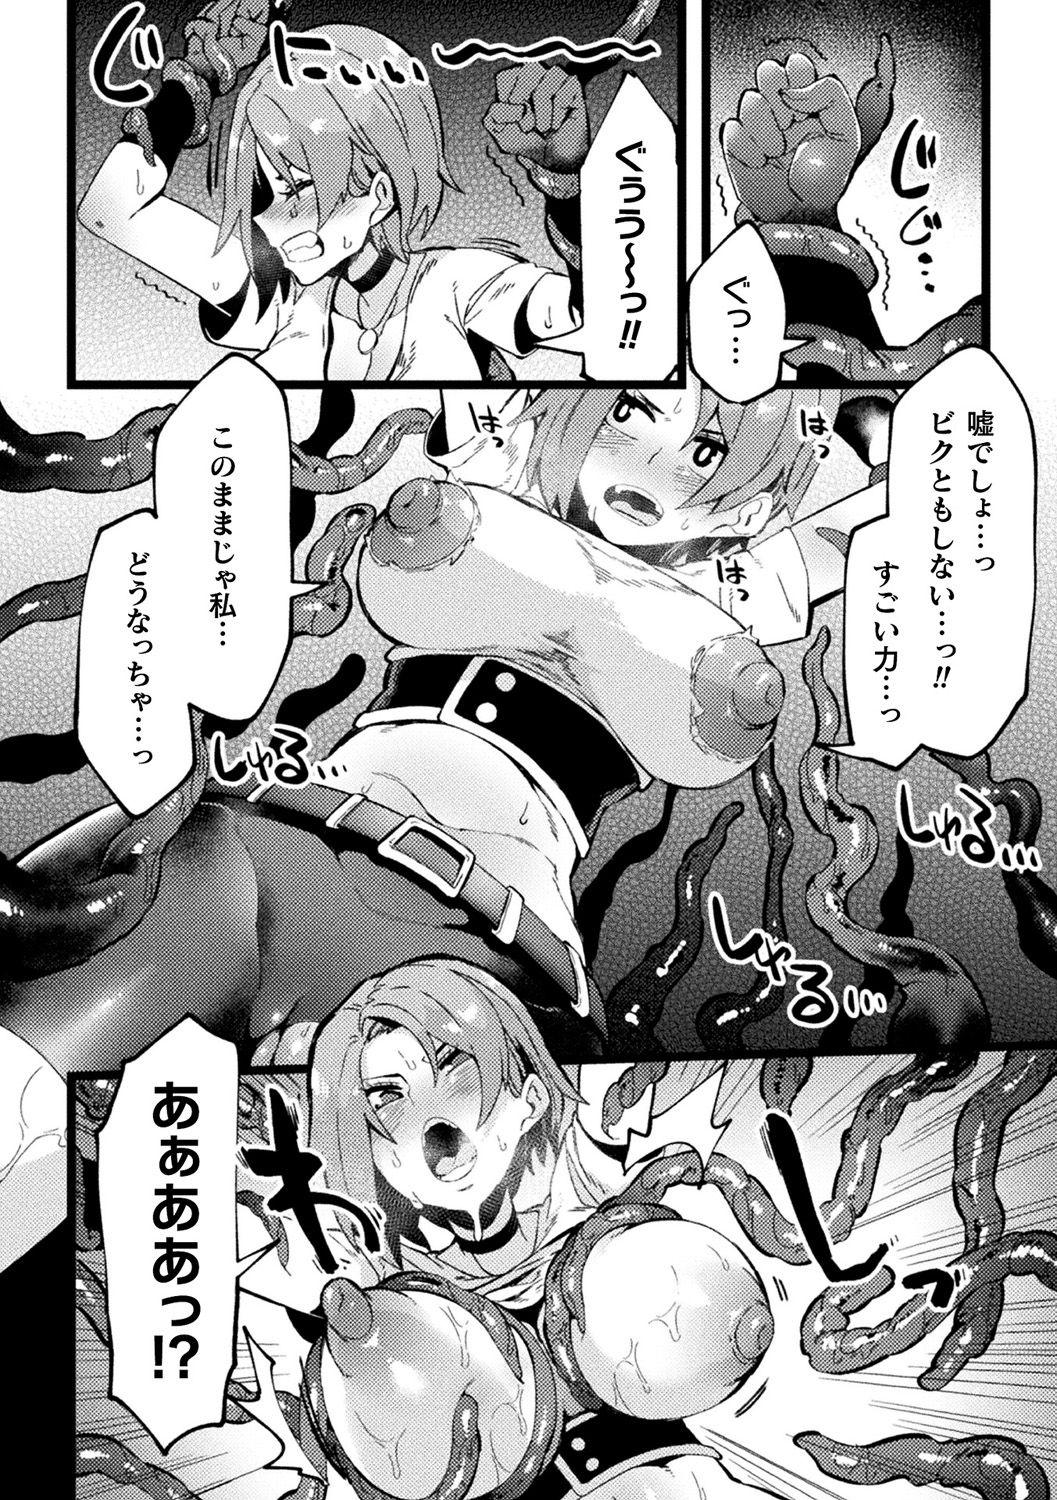 [Anthology] Bessatsu Comic Unreal Ponkotsu Fantasy Heroine H ~Doji o Funde Gyakuten Saretari Ero Trap ni Hamattari!?~ Vol. 2 [Digital] 51